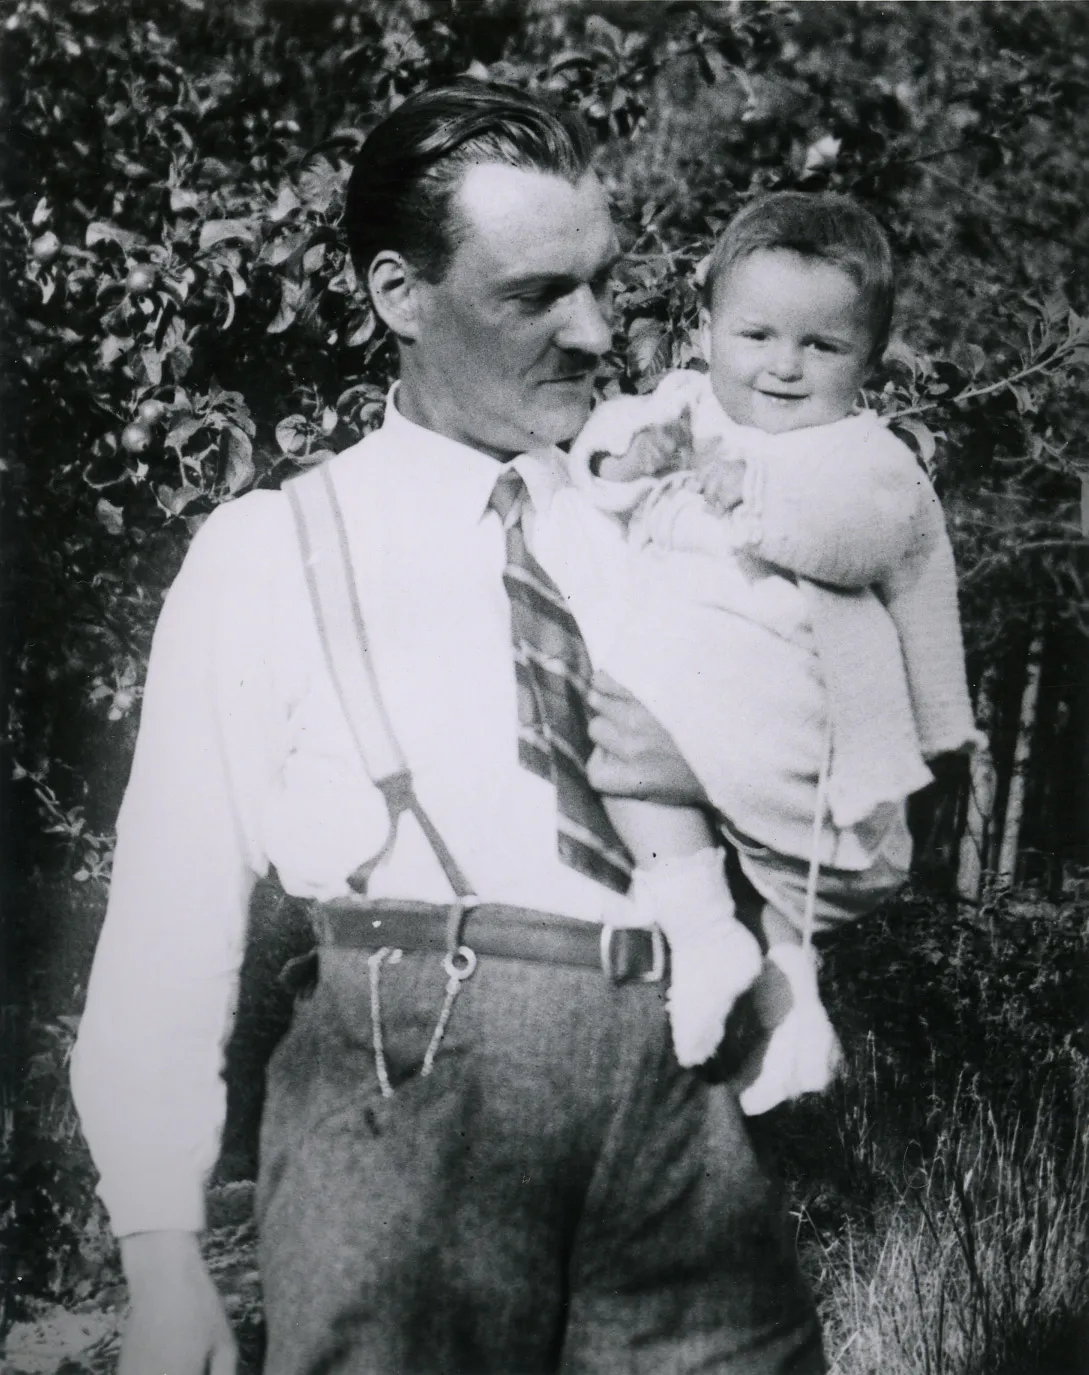 Un hombre con corbata y tirantes sostiene a una niña pequeña.